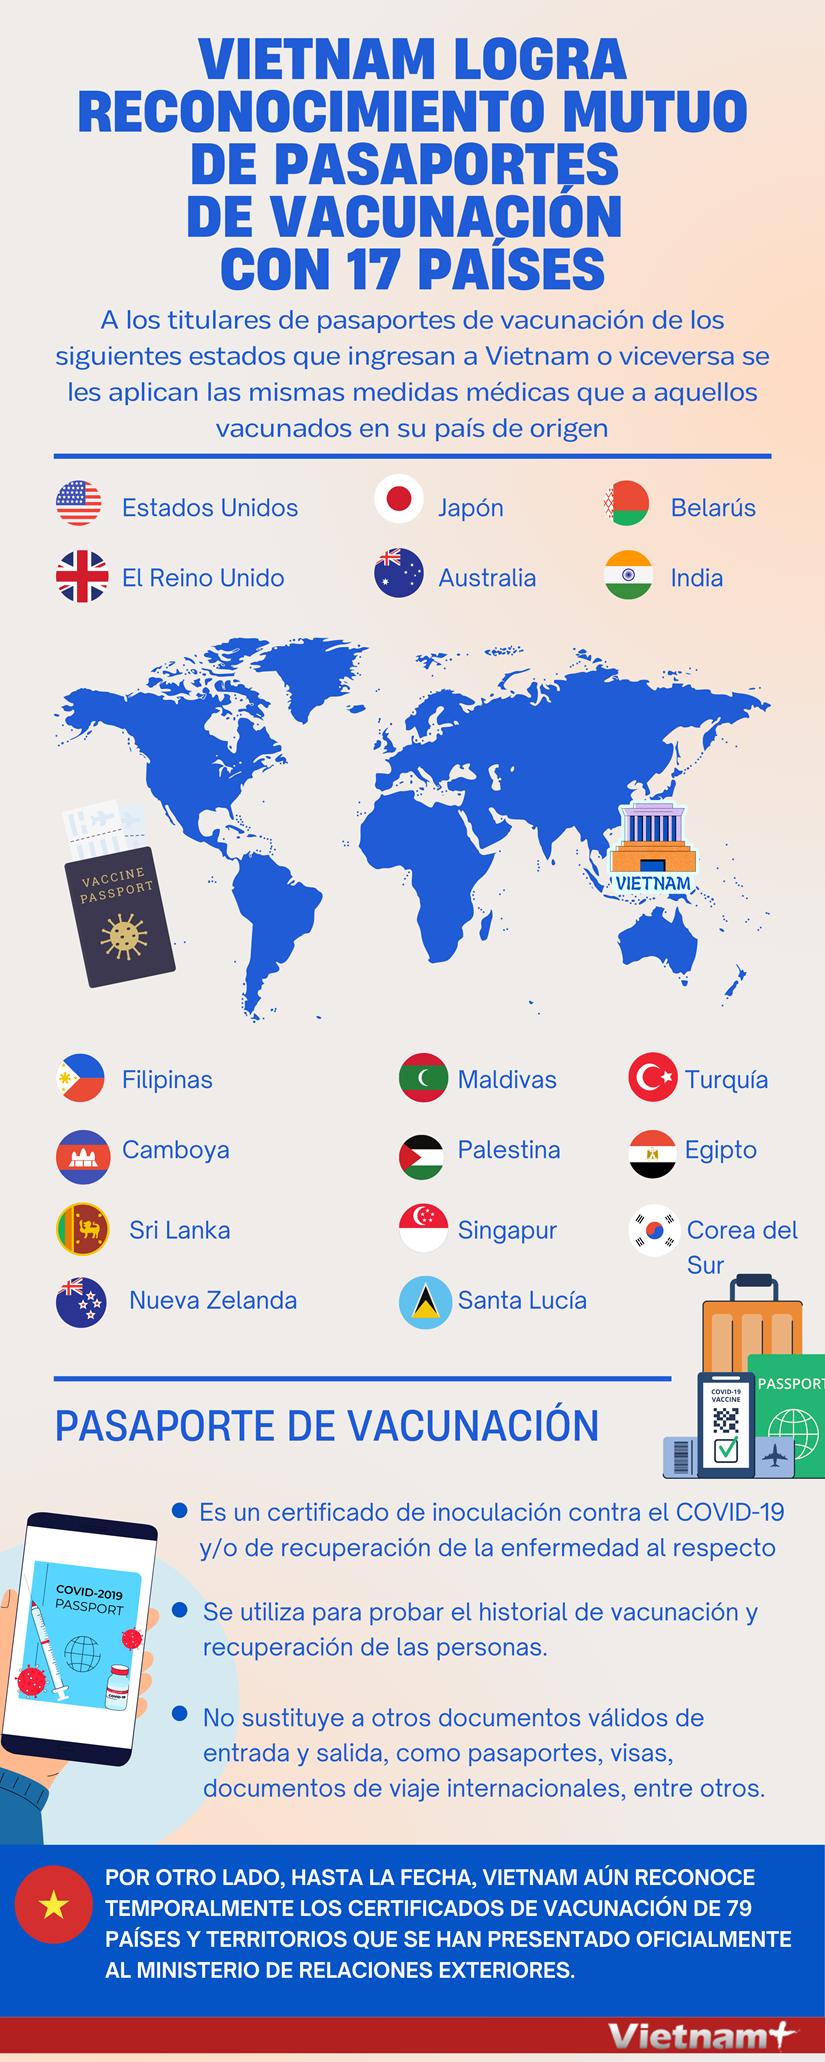 Vietnam logra reconocimiento mutuo de pasaportes de vacunacion con 17 paises hinh anh 1